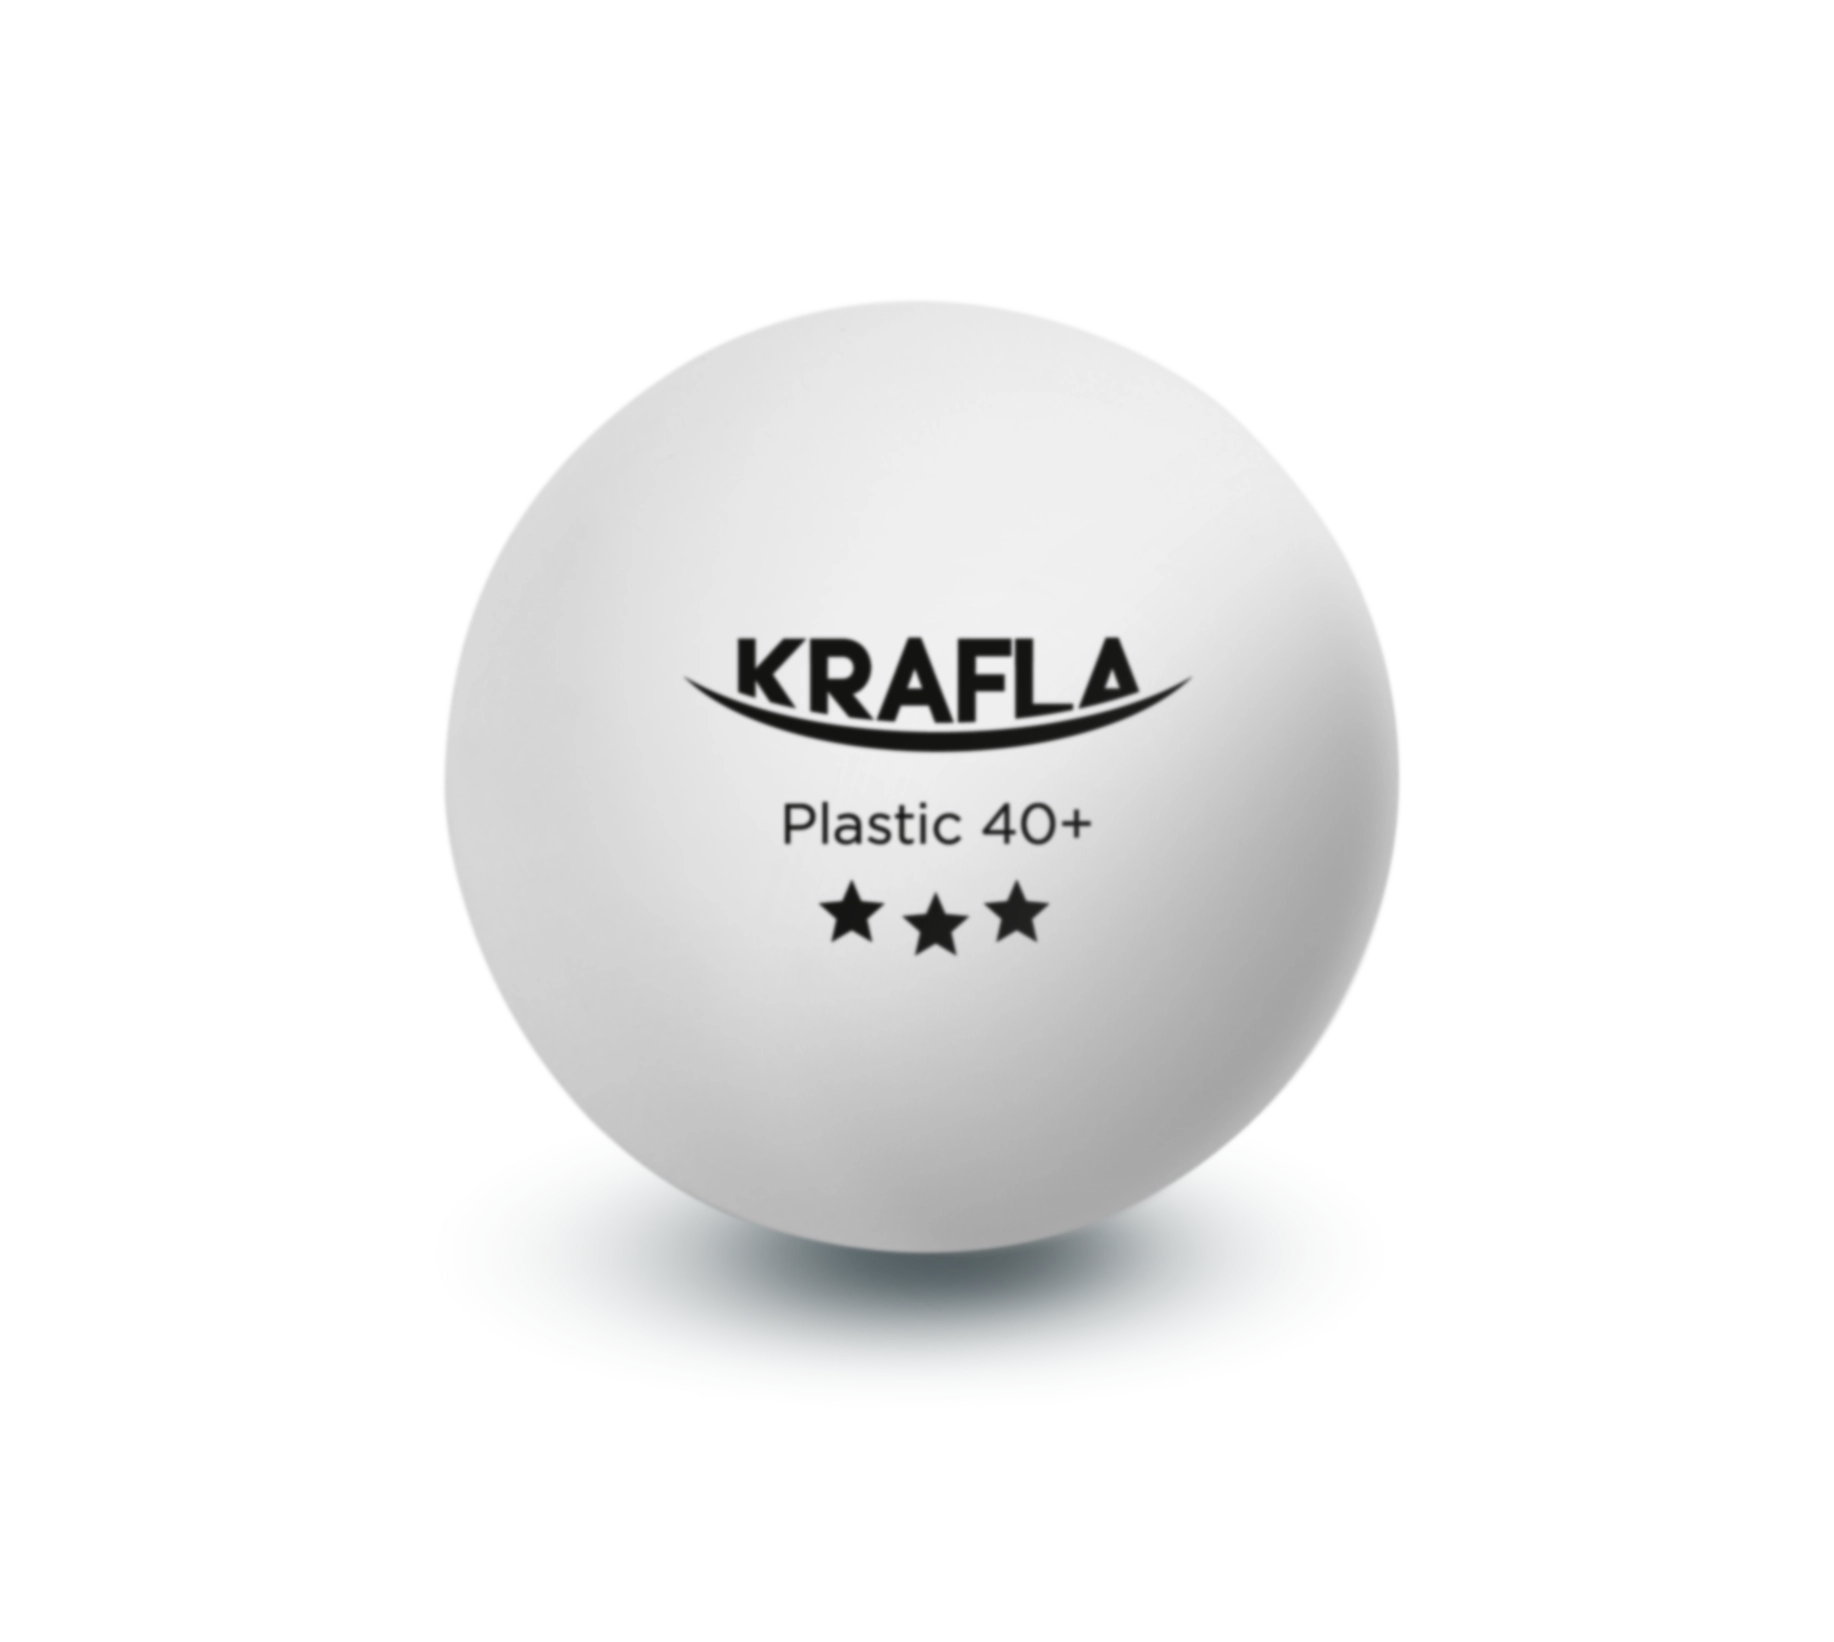 KRAFLA B-WT3000 Набор для настольного тенниса (мяч три звезды 3шт.) с гарантией